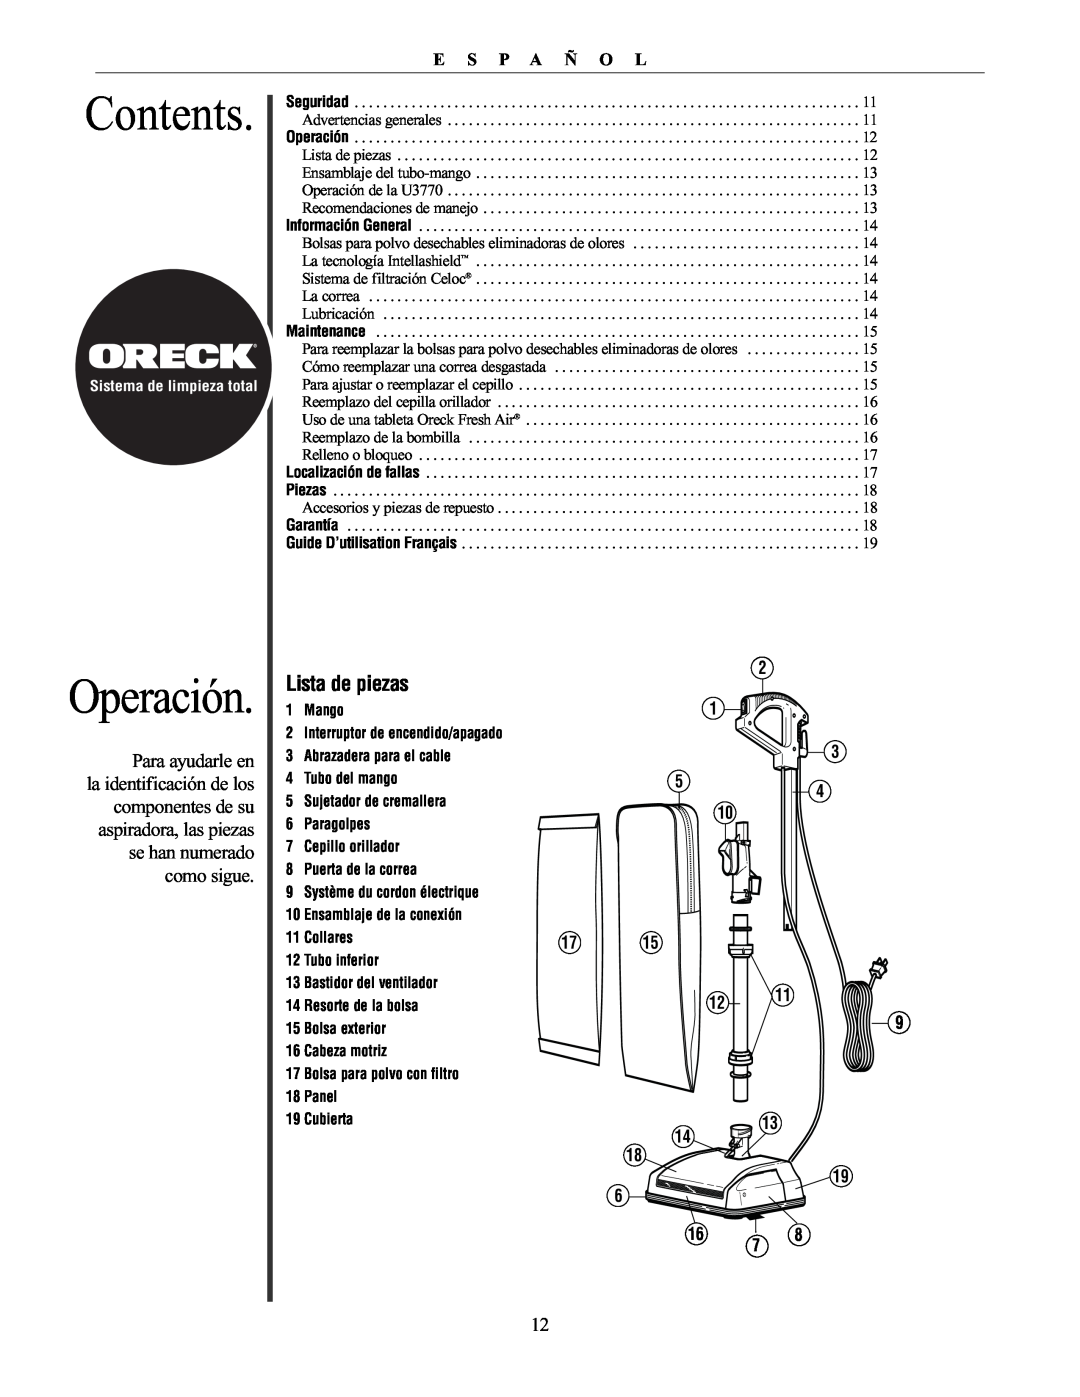 Oreck 76011-01REVC manual Operación, Lista de piezas, Contents, E S P A Ñ O L 